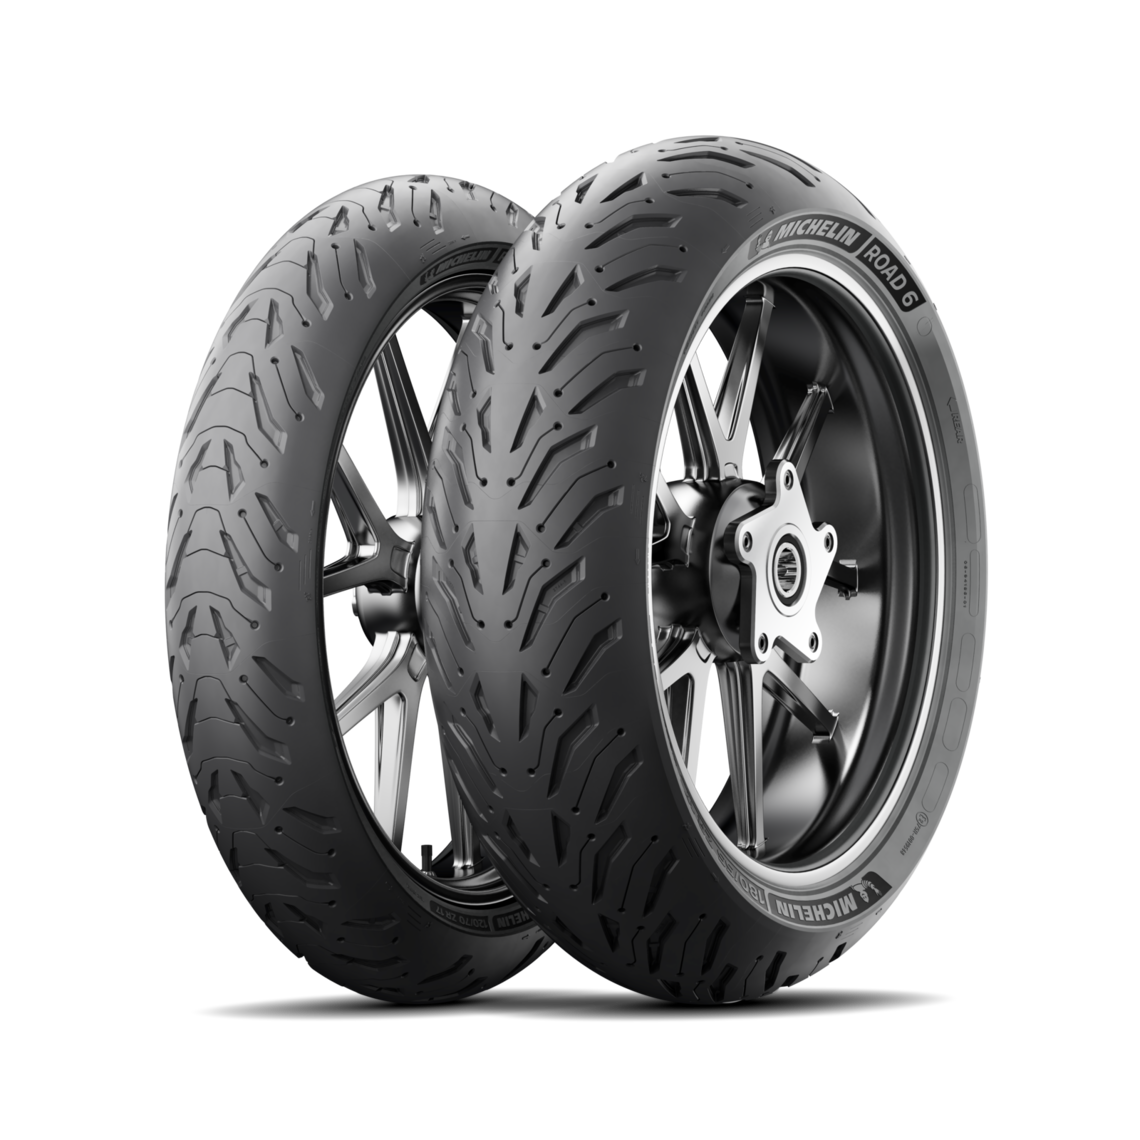 Gomme Nuove Michelin 140/70 ZR17 66W ROAD 6 pneumatici nuovi Estivo